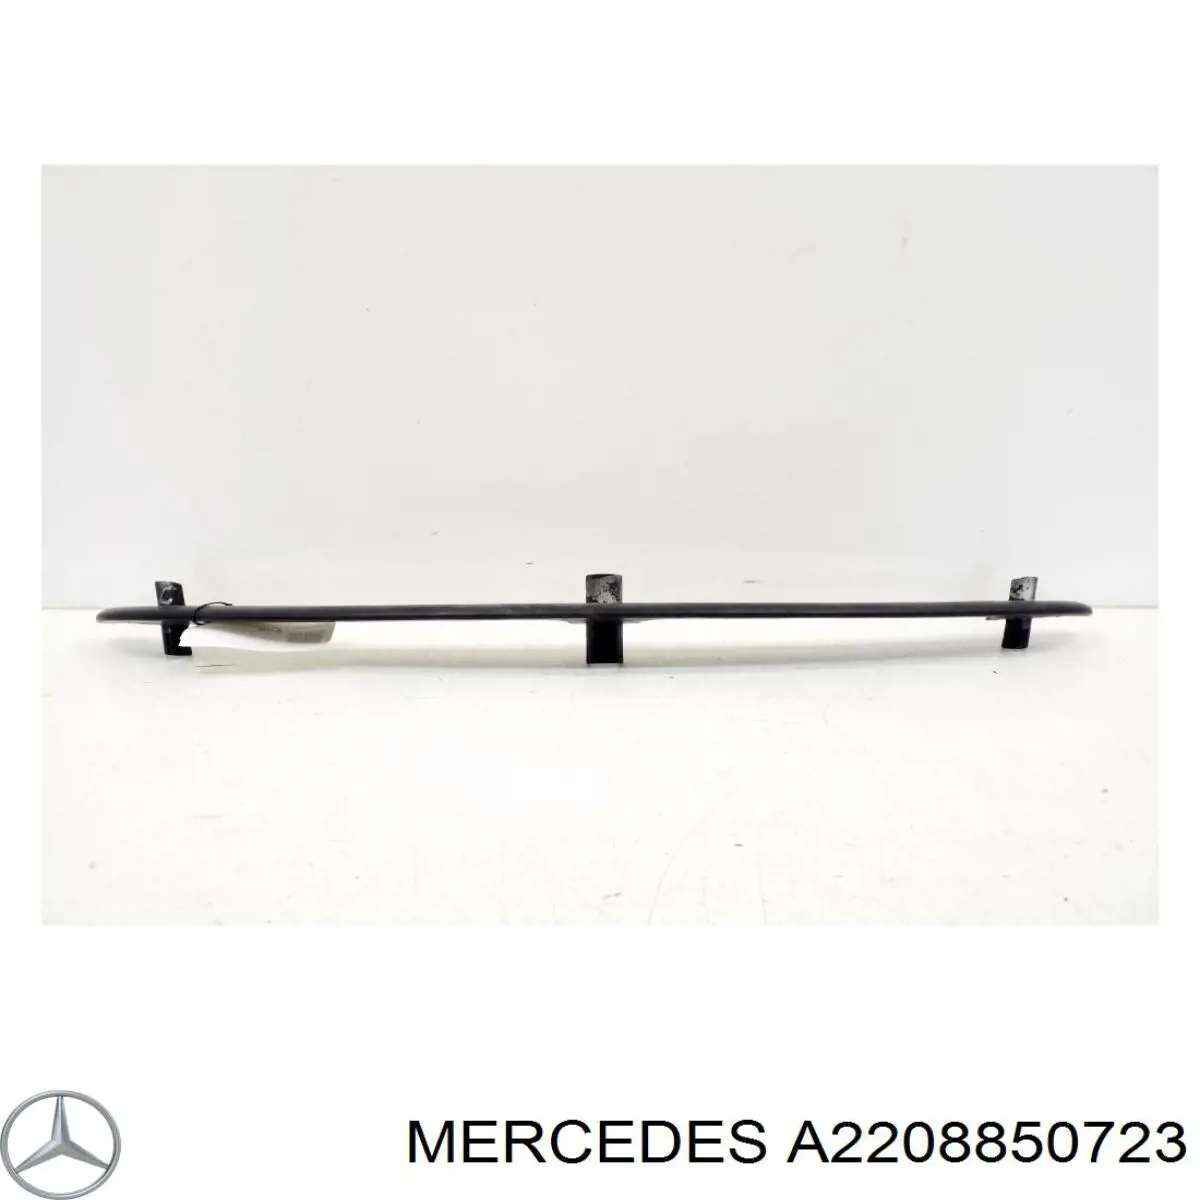 A2208850723 Mercedes rejilla de ventilación, parachoques trasero, central